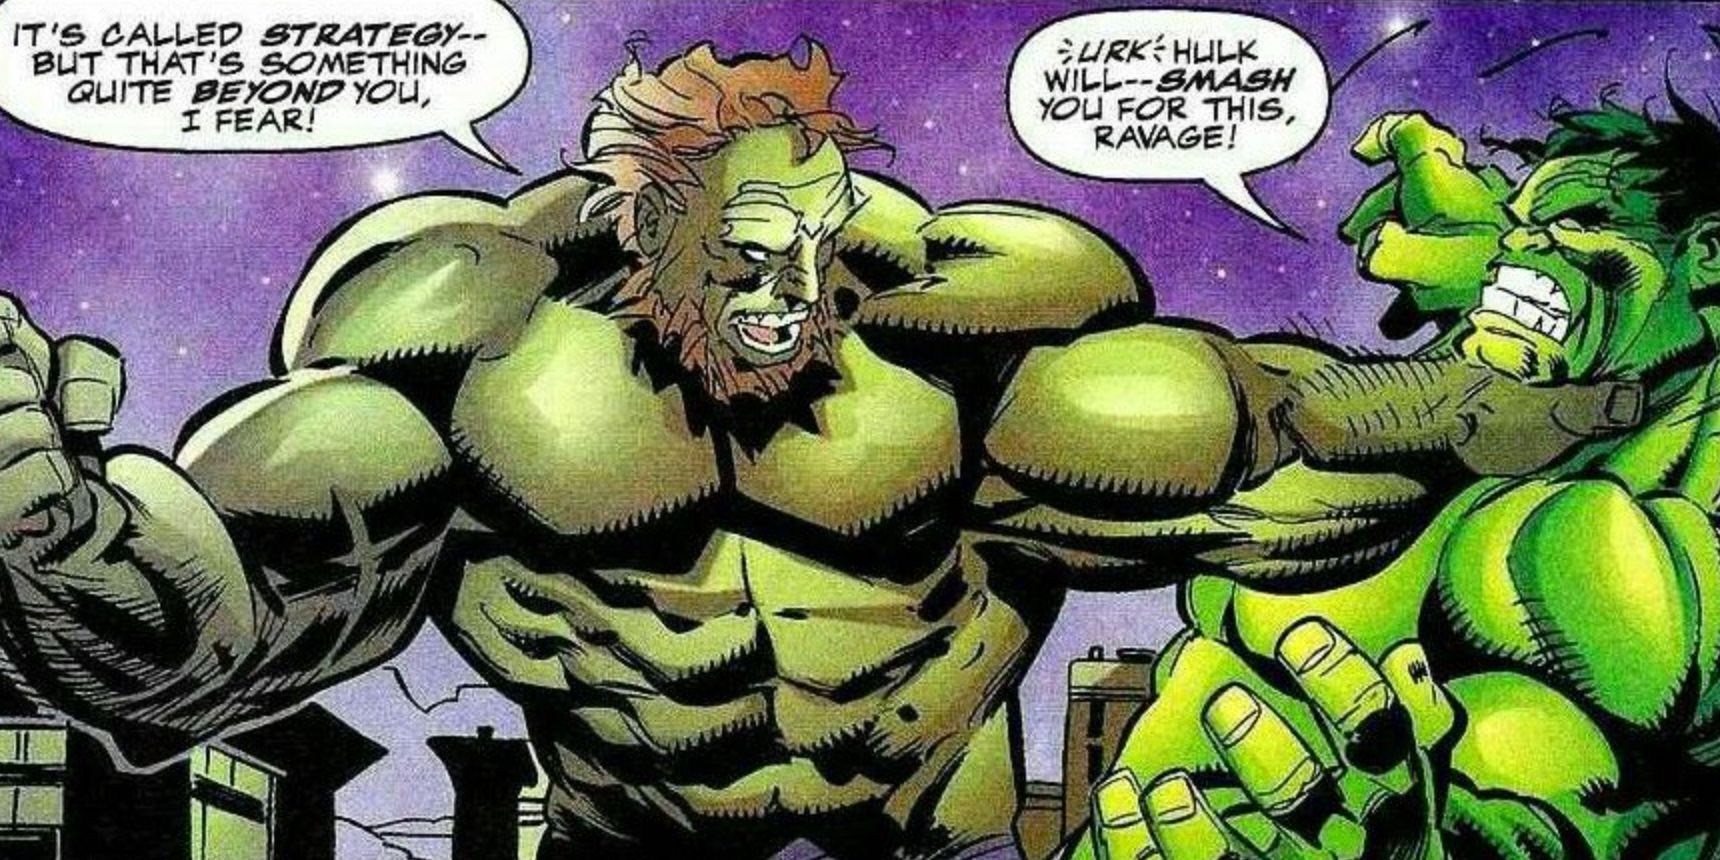 Ravage fights Hulk in Marvel comics